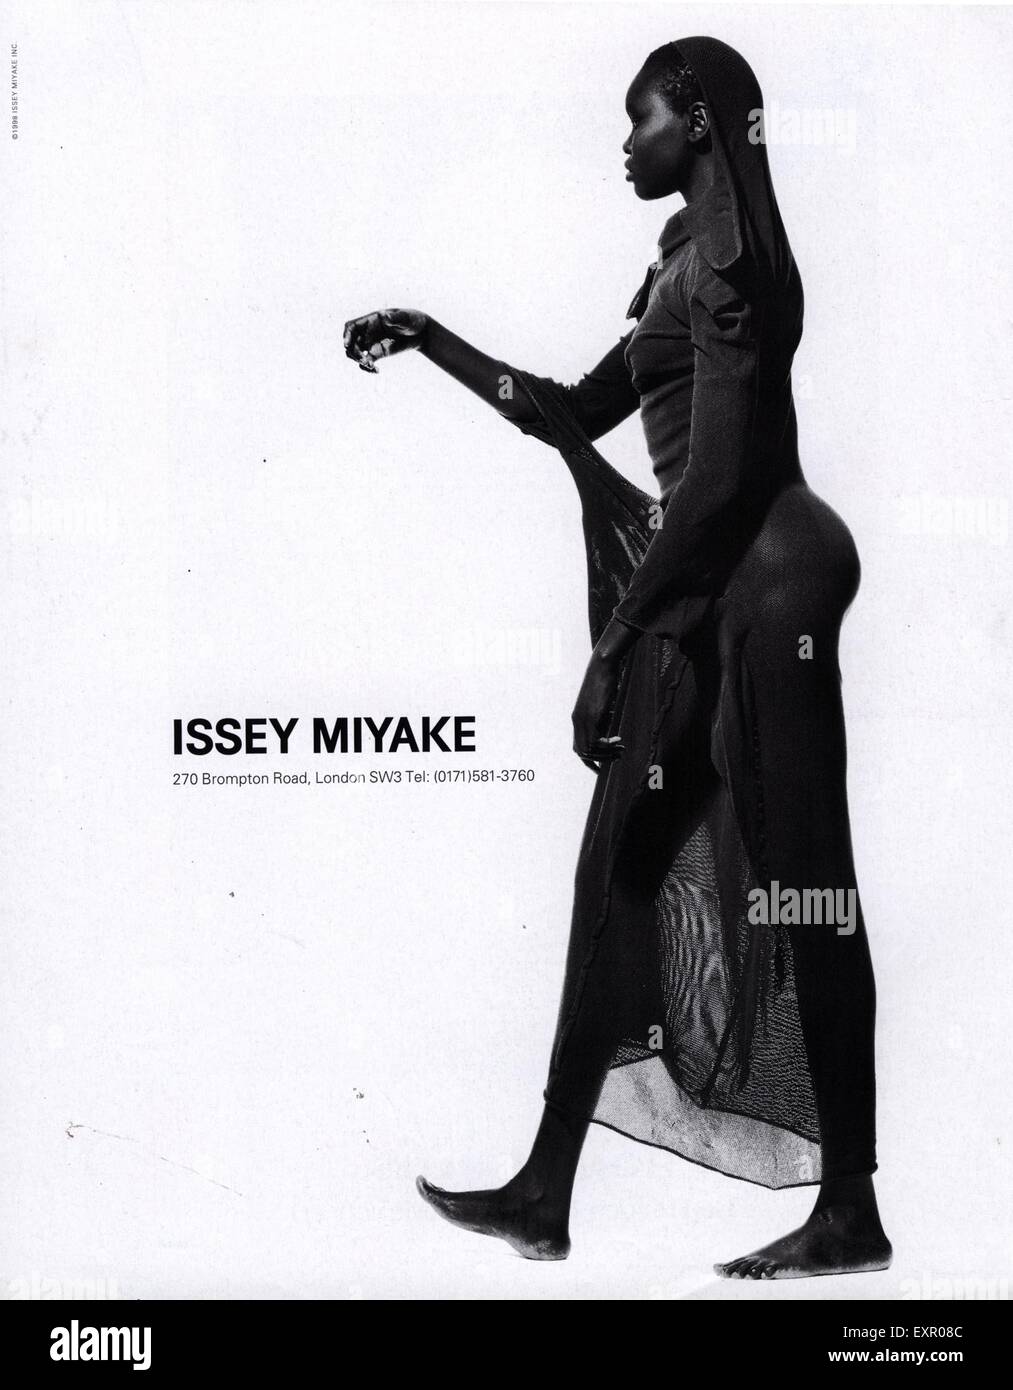 1990s UK Issey Miyake Magazine Advert Stock Photo